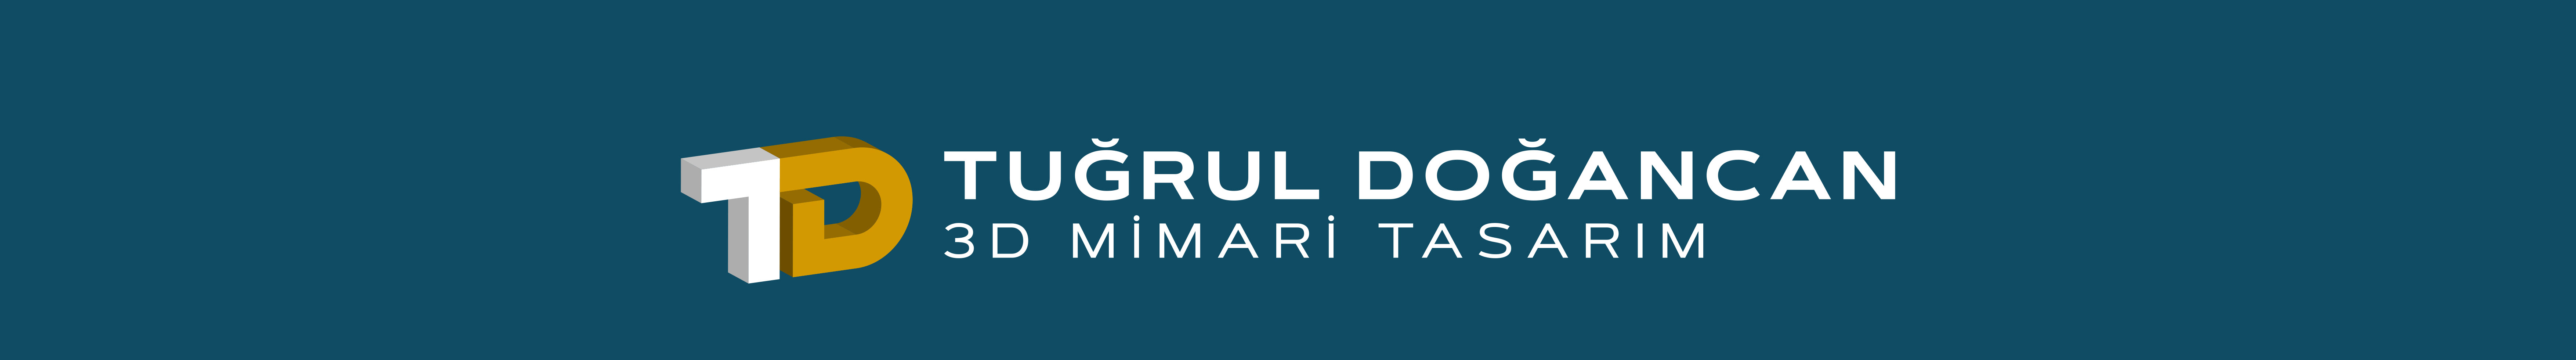 Tuğrul Doğancan's profile banner